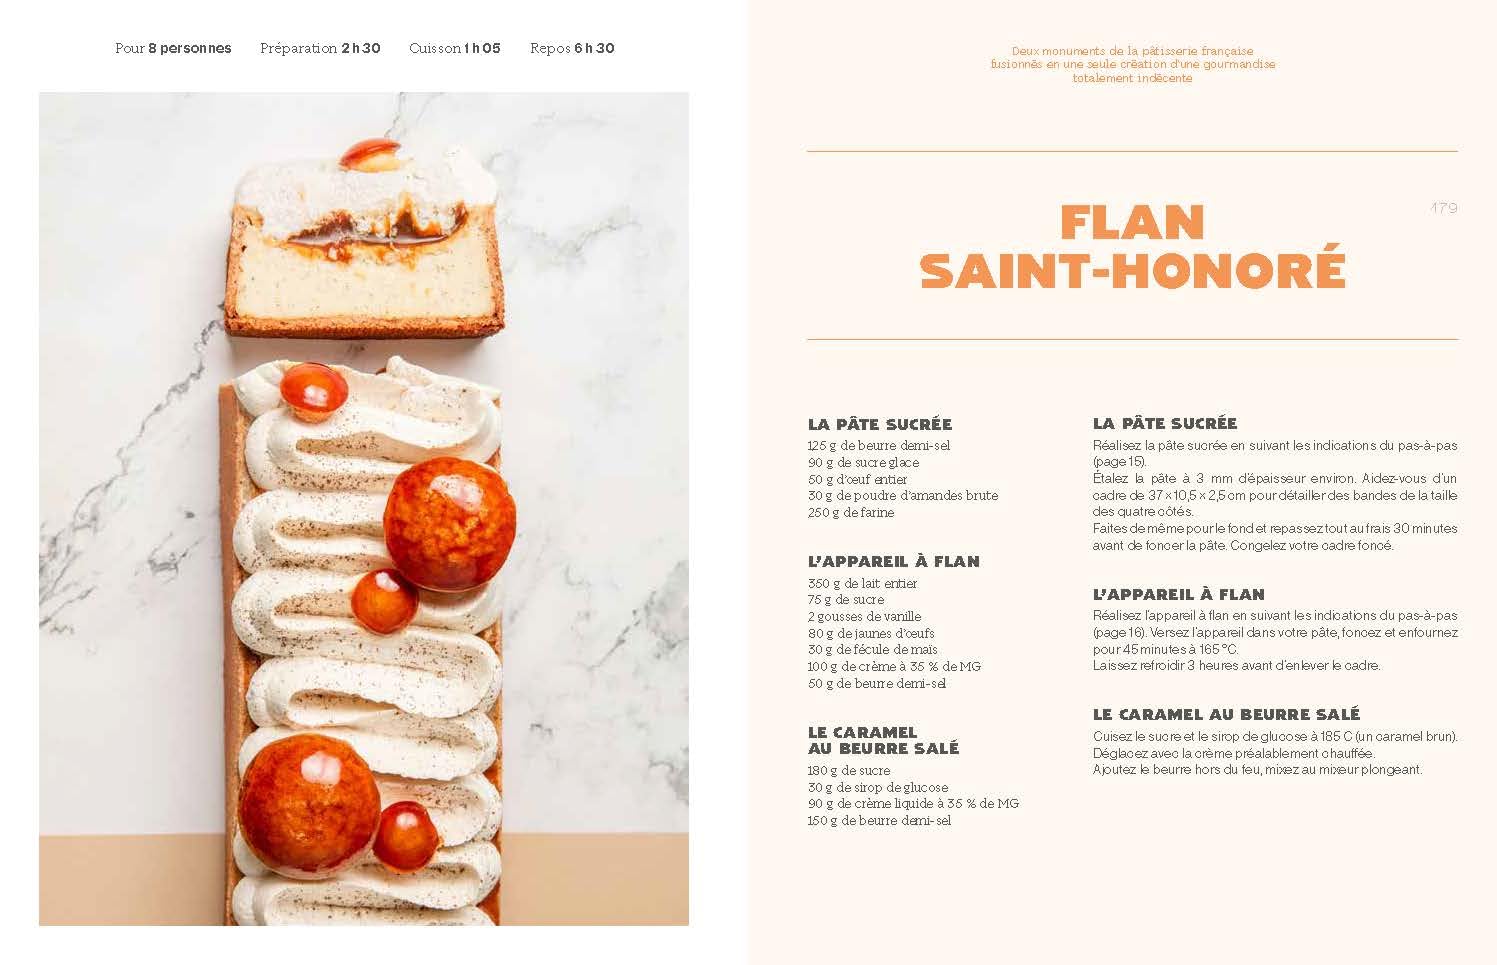 Flan - 51 recettes de grand.e.s Chef.fe.s (François Blanc)